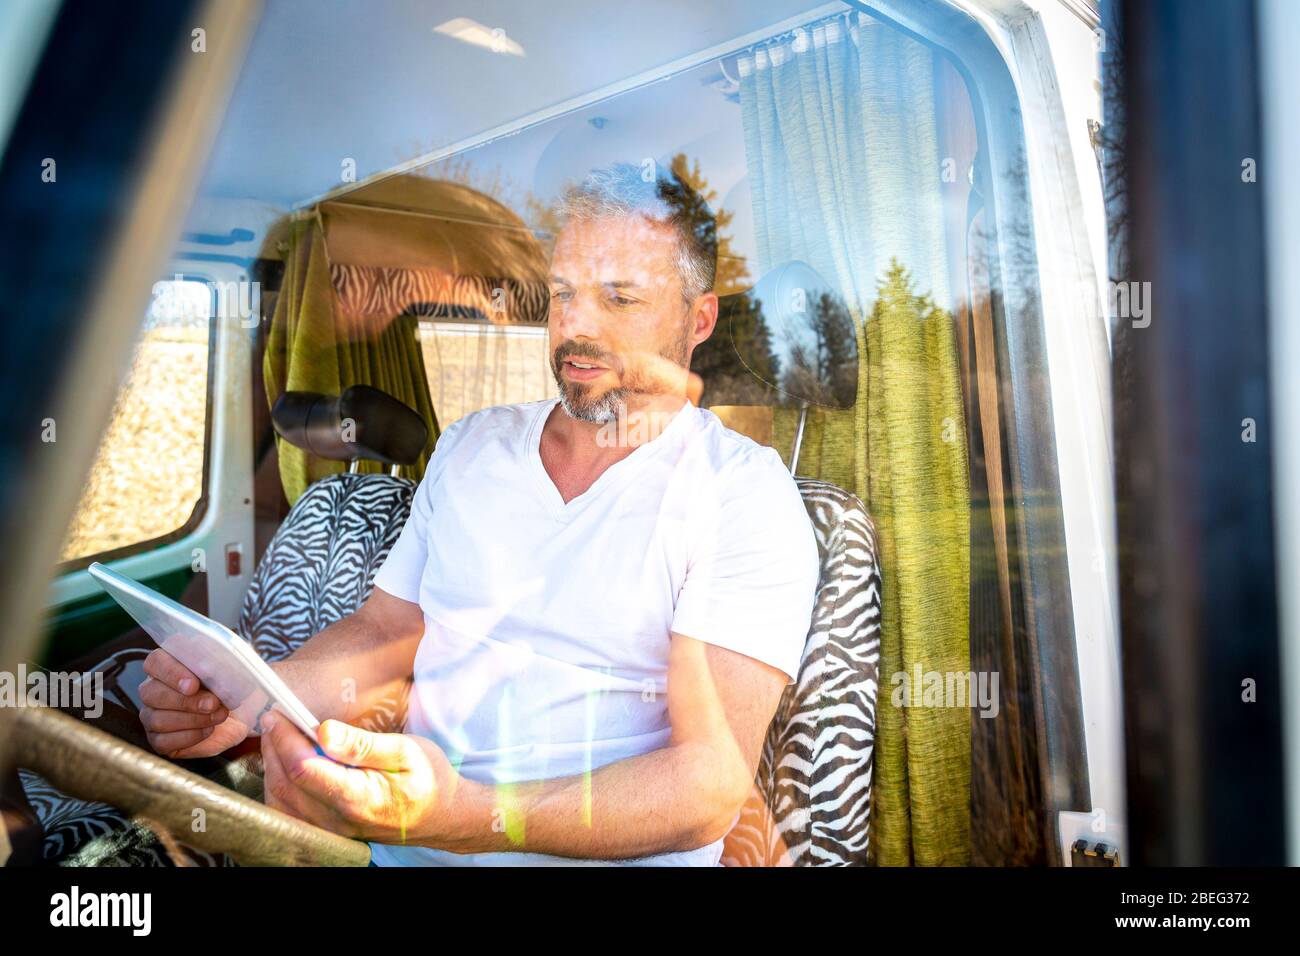 Portrait de l'homme avec lunettes de soleil pendant les vacances dans sa camionnette Banque D'Images